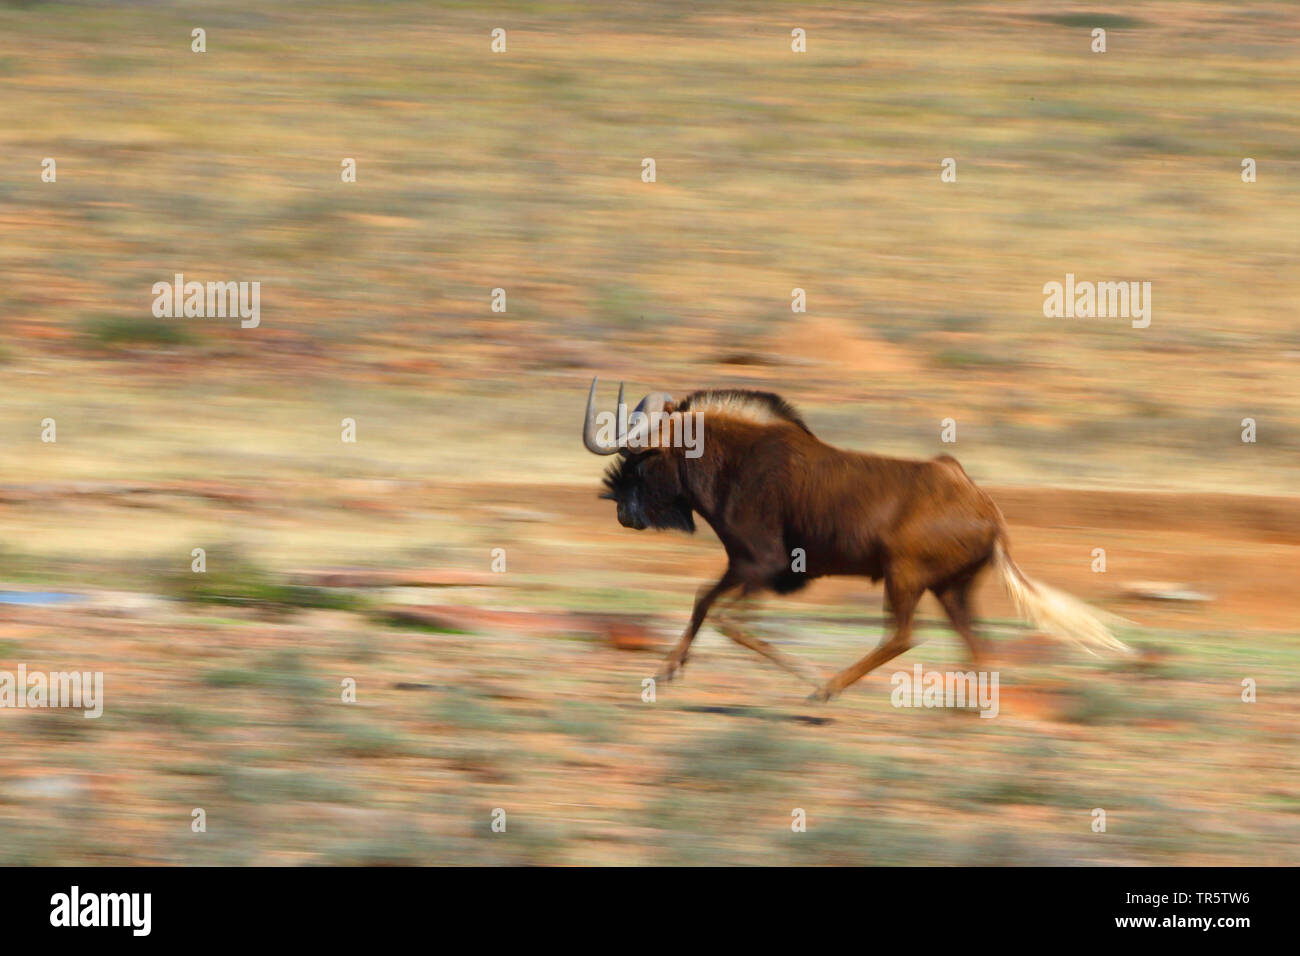 Nero GNU, bianco-tailed gnu (Connochaetes gnou), che corre attraverso la savana, offuscata, Sud Africa, Eastern Cape, Mountain Zebra National Park Foto Stock